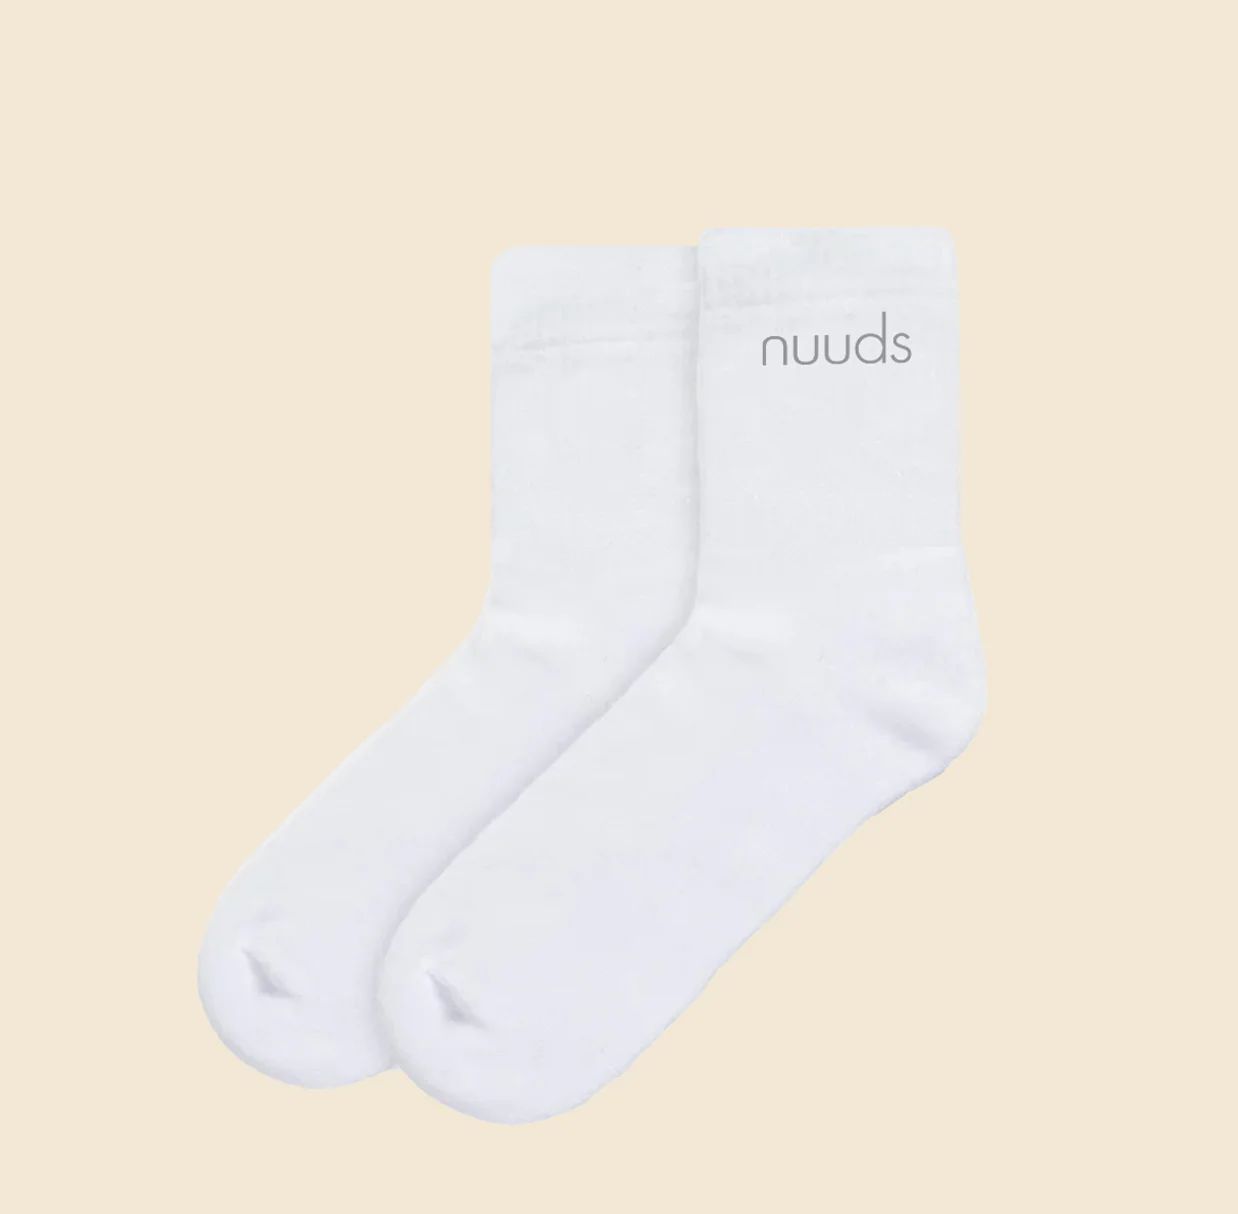 nuuds socks | nuuds